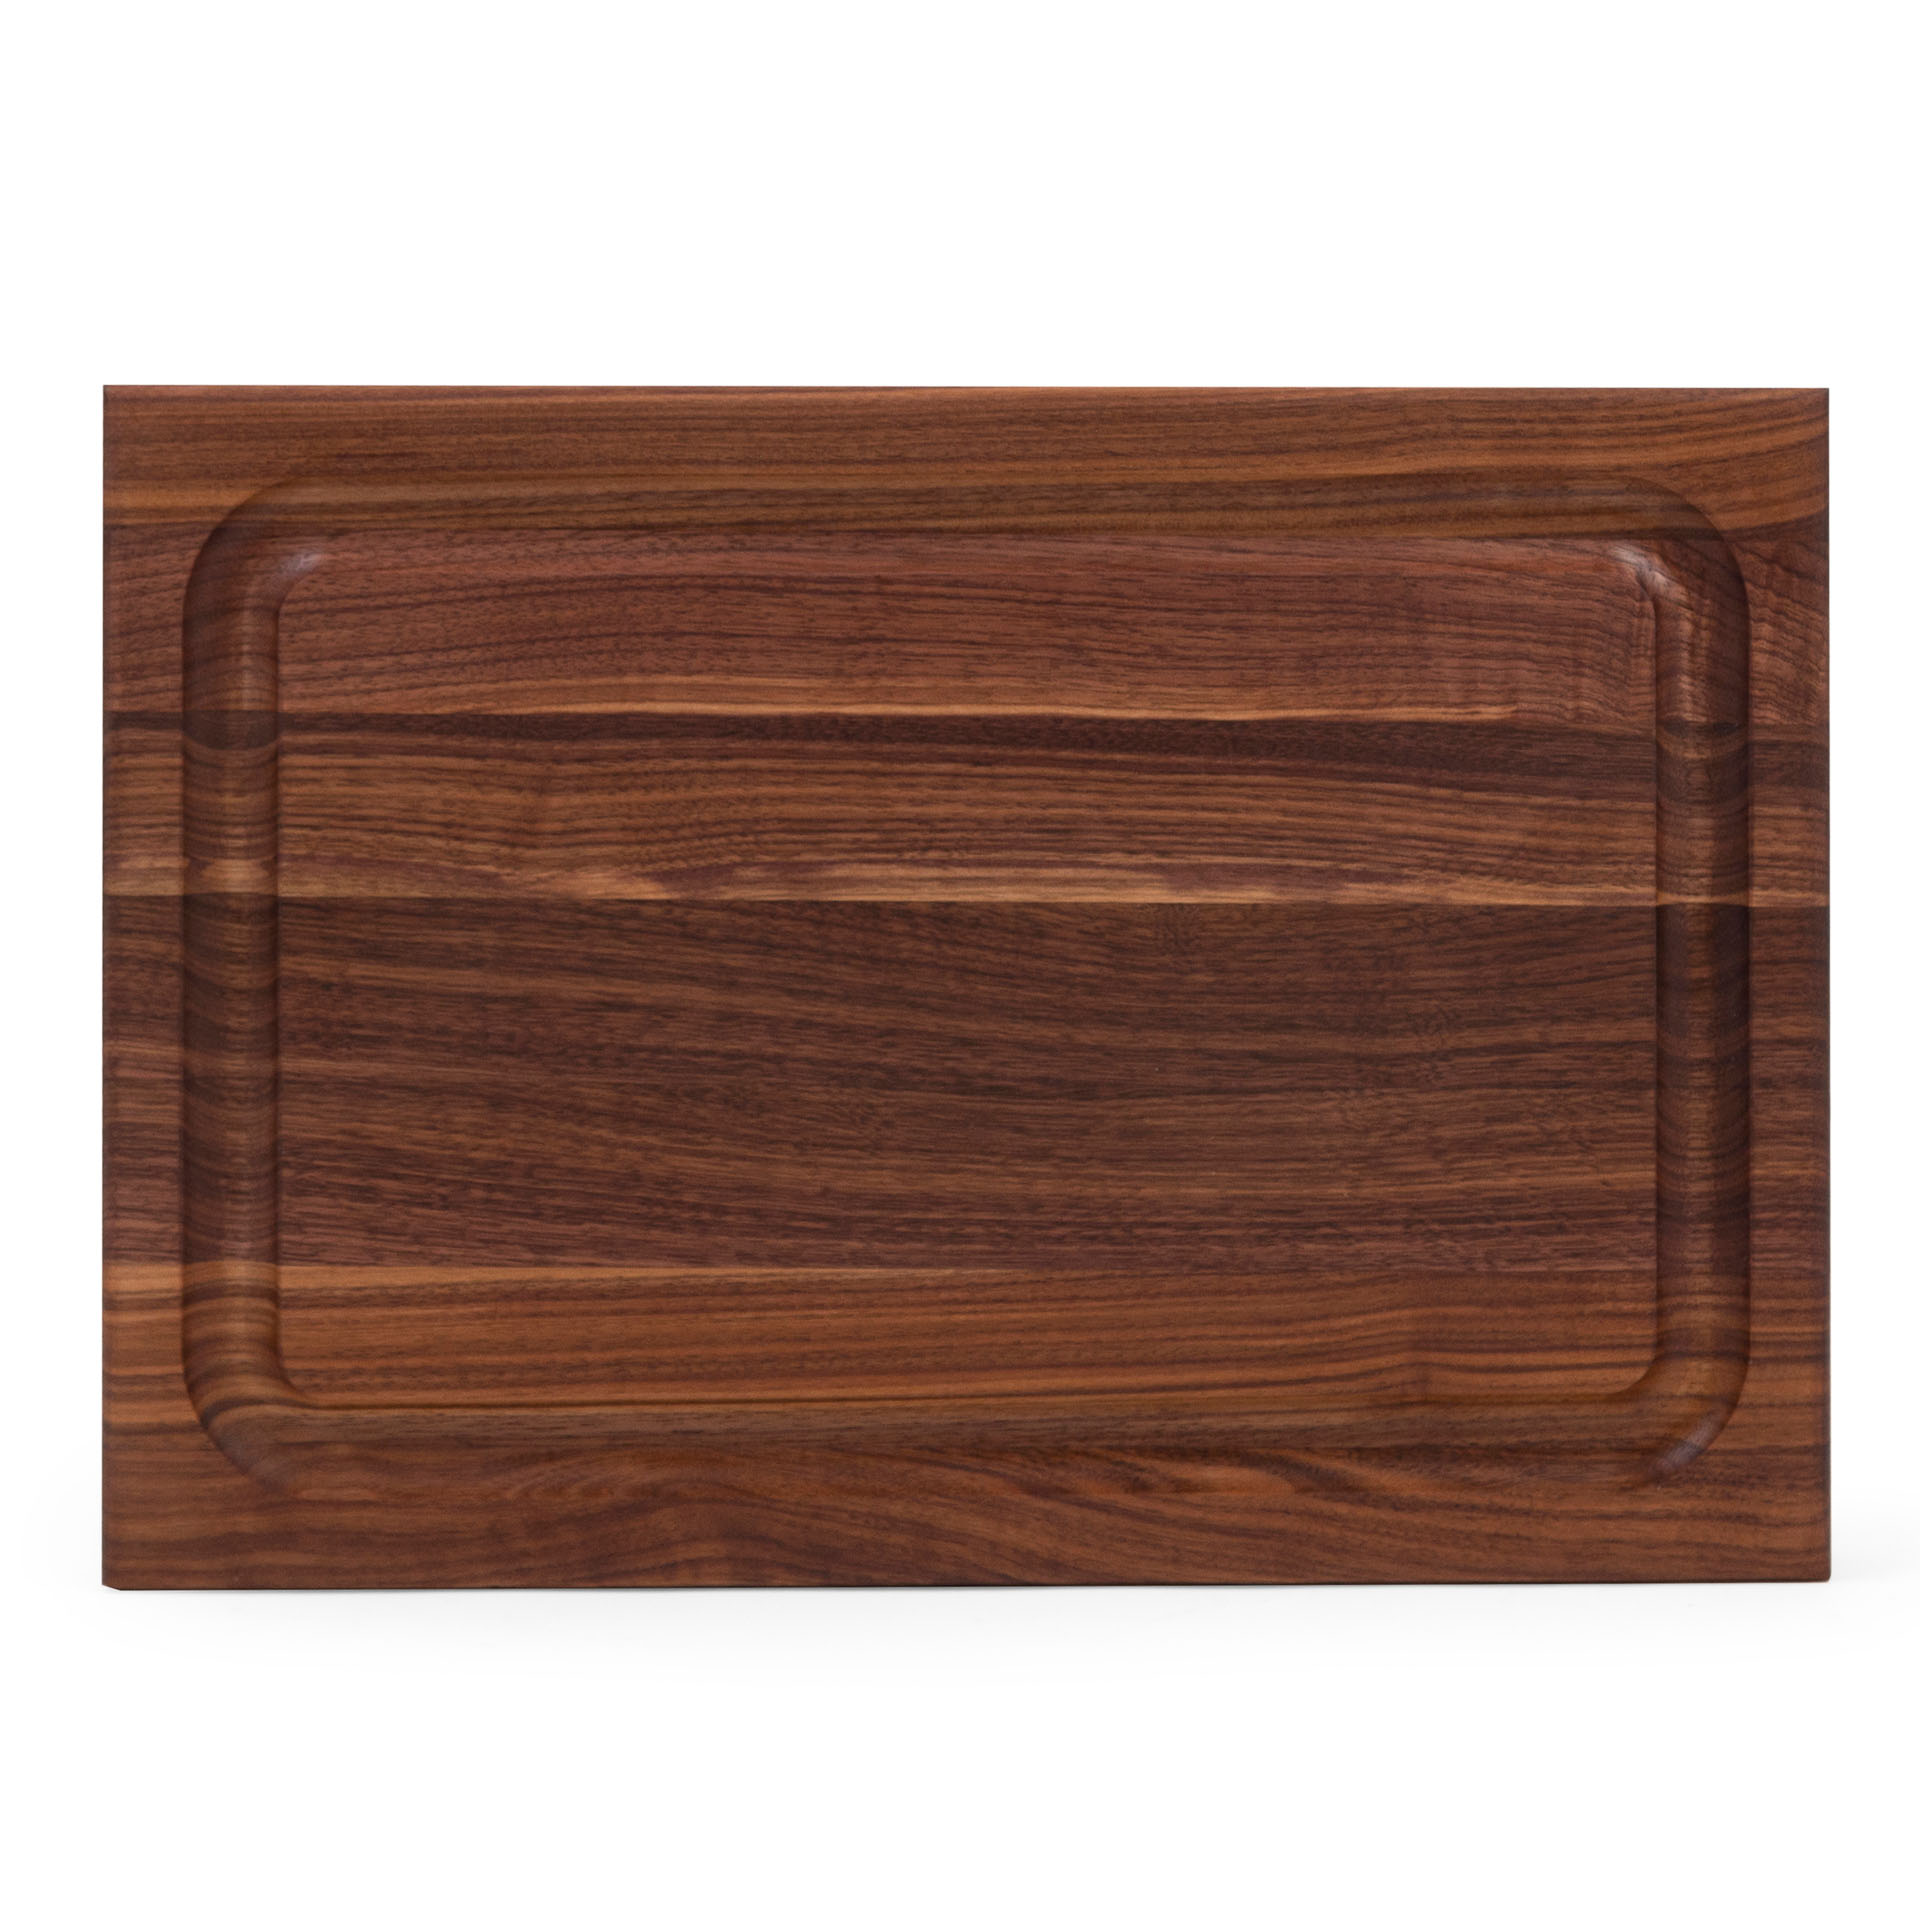 High quality-cutting boards-boosblocks-69 55